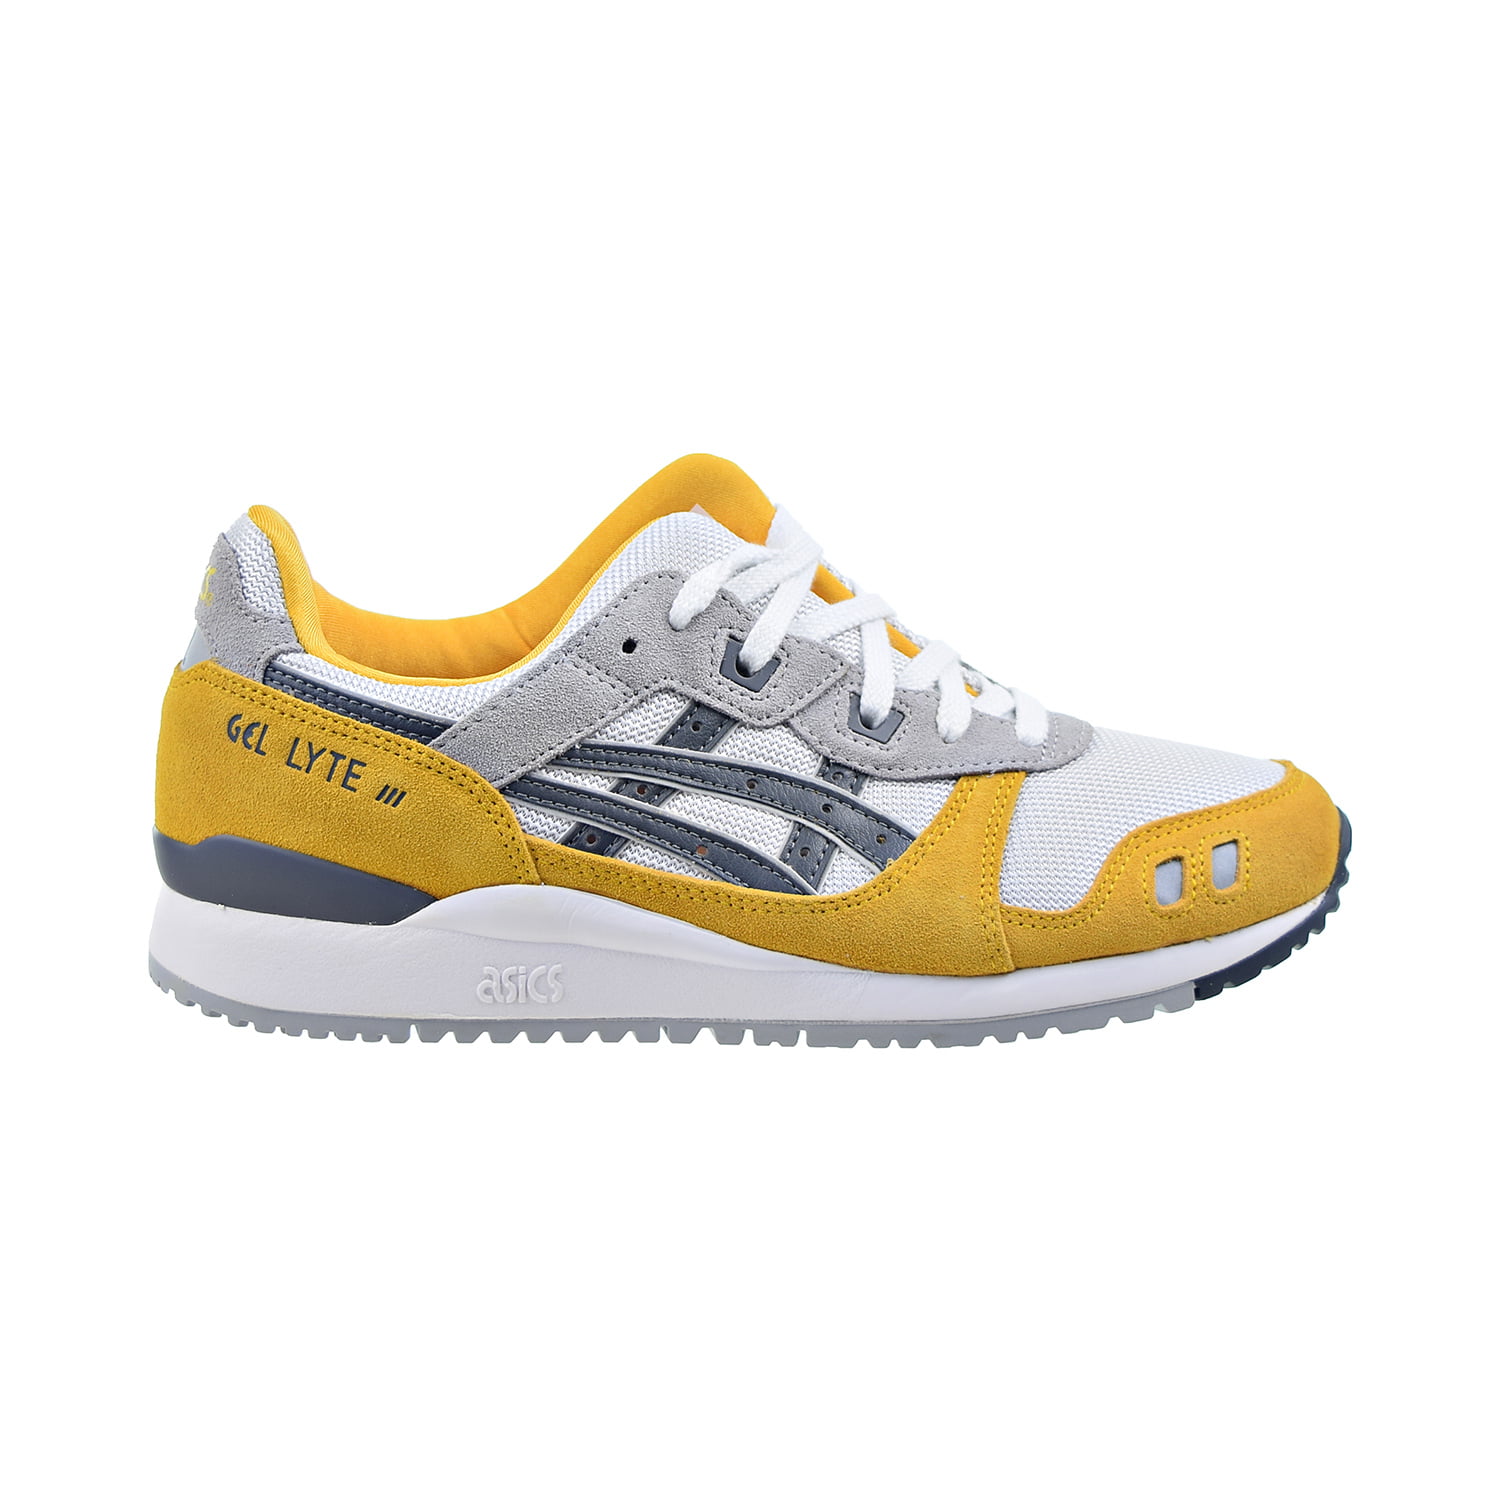 Asics Gel-Lyte III OG Men's Shoes Sunflower-Carrier Grey 1201a482